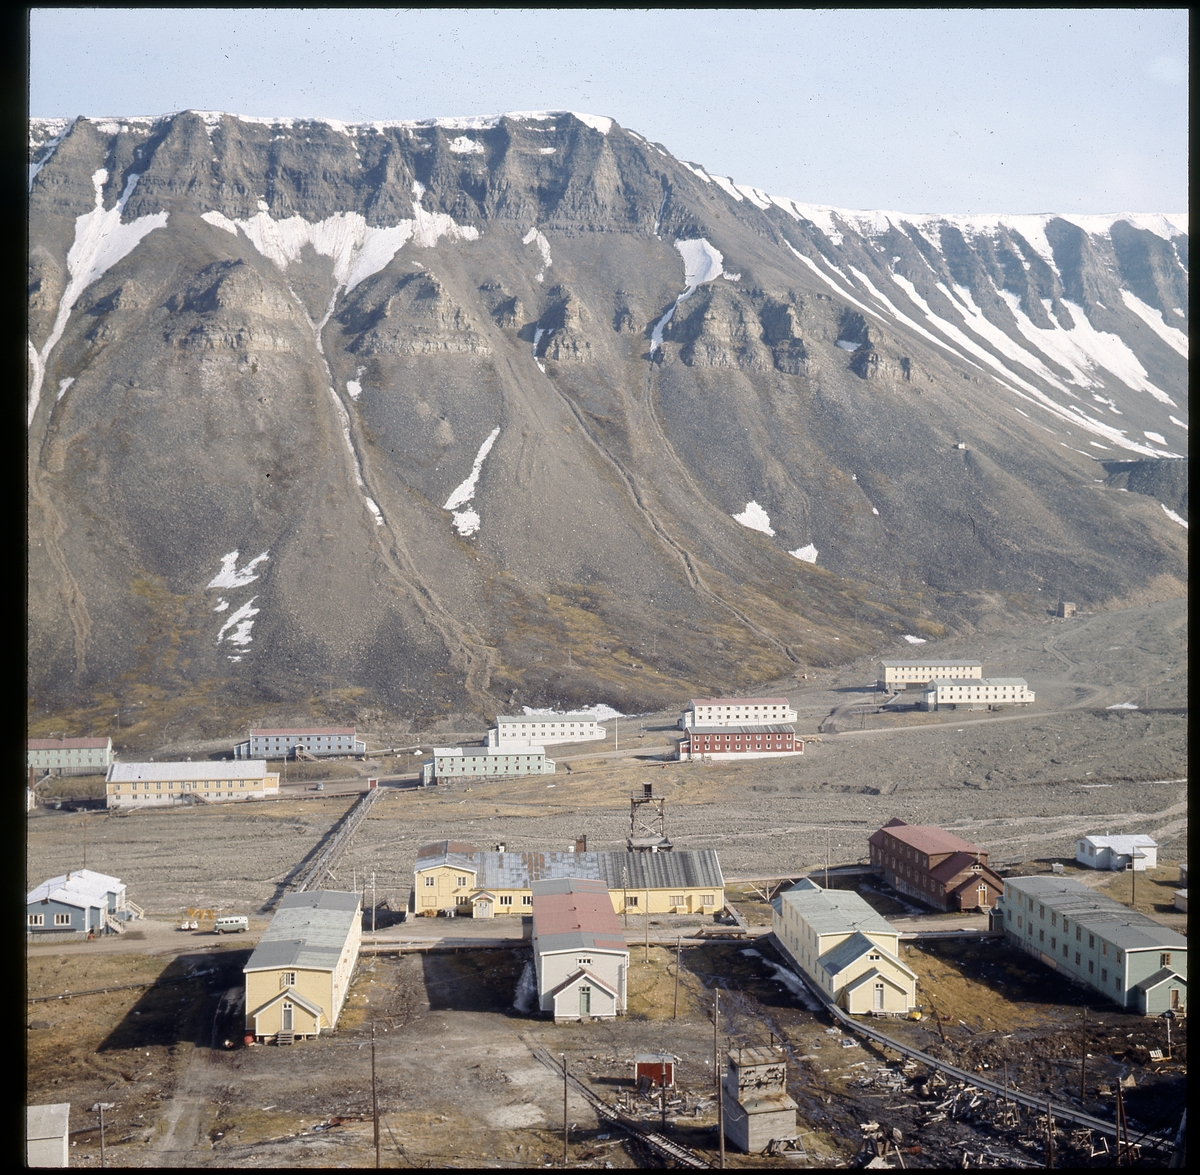 Nybyen og Sverdrupbyen, 1970.